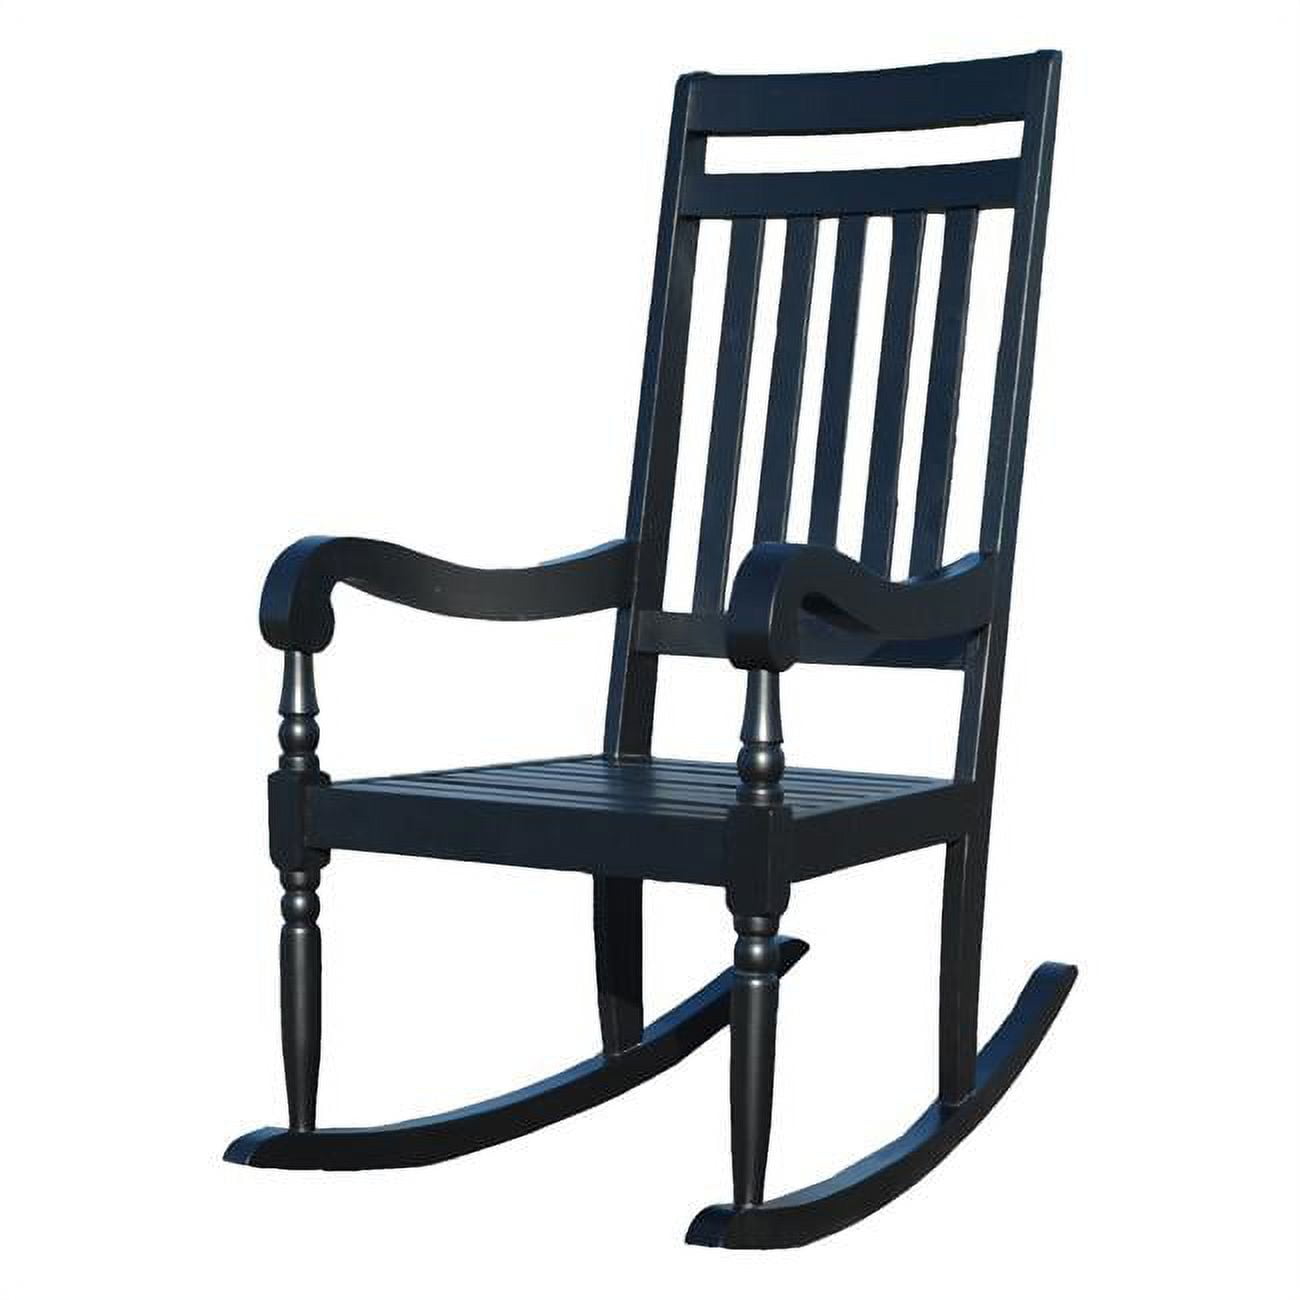 Jr1101 Blk Belmont Slat Rocker Chair - Black - 36 X 23.5 X 45 In.